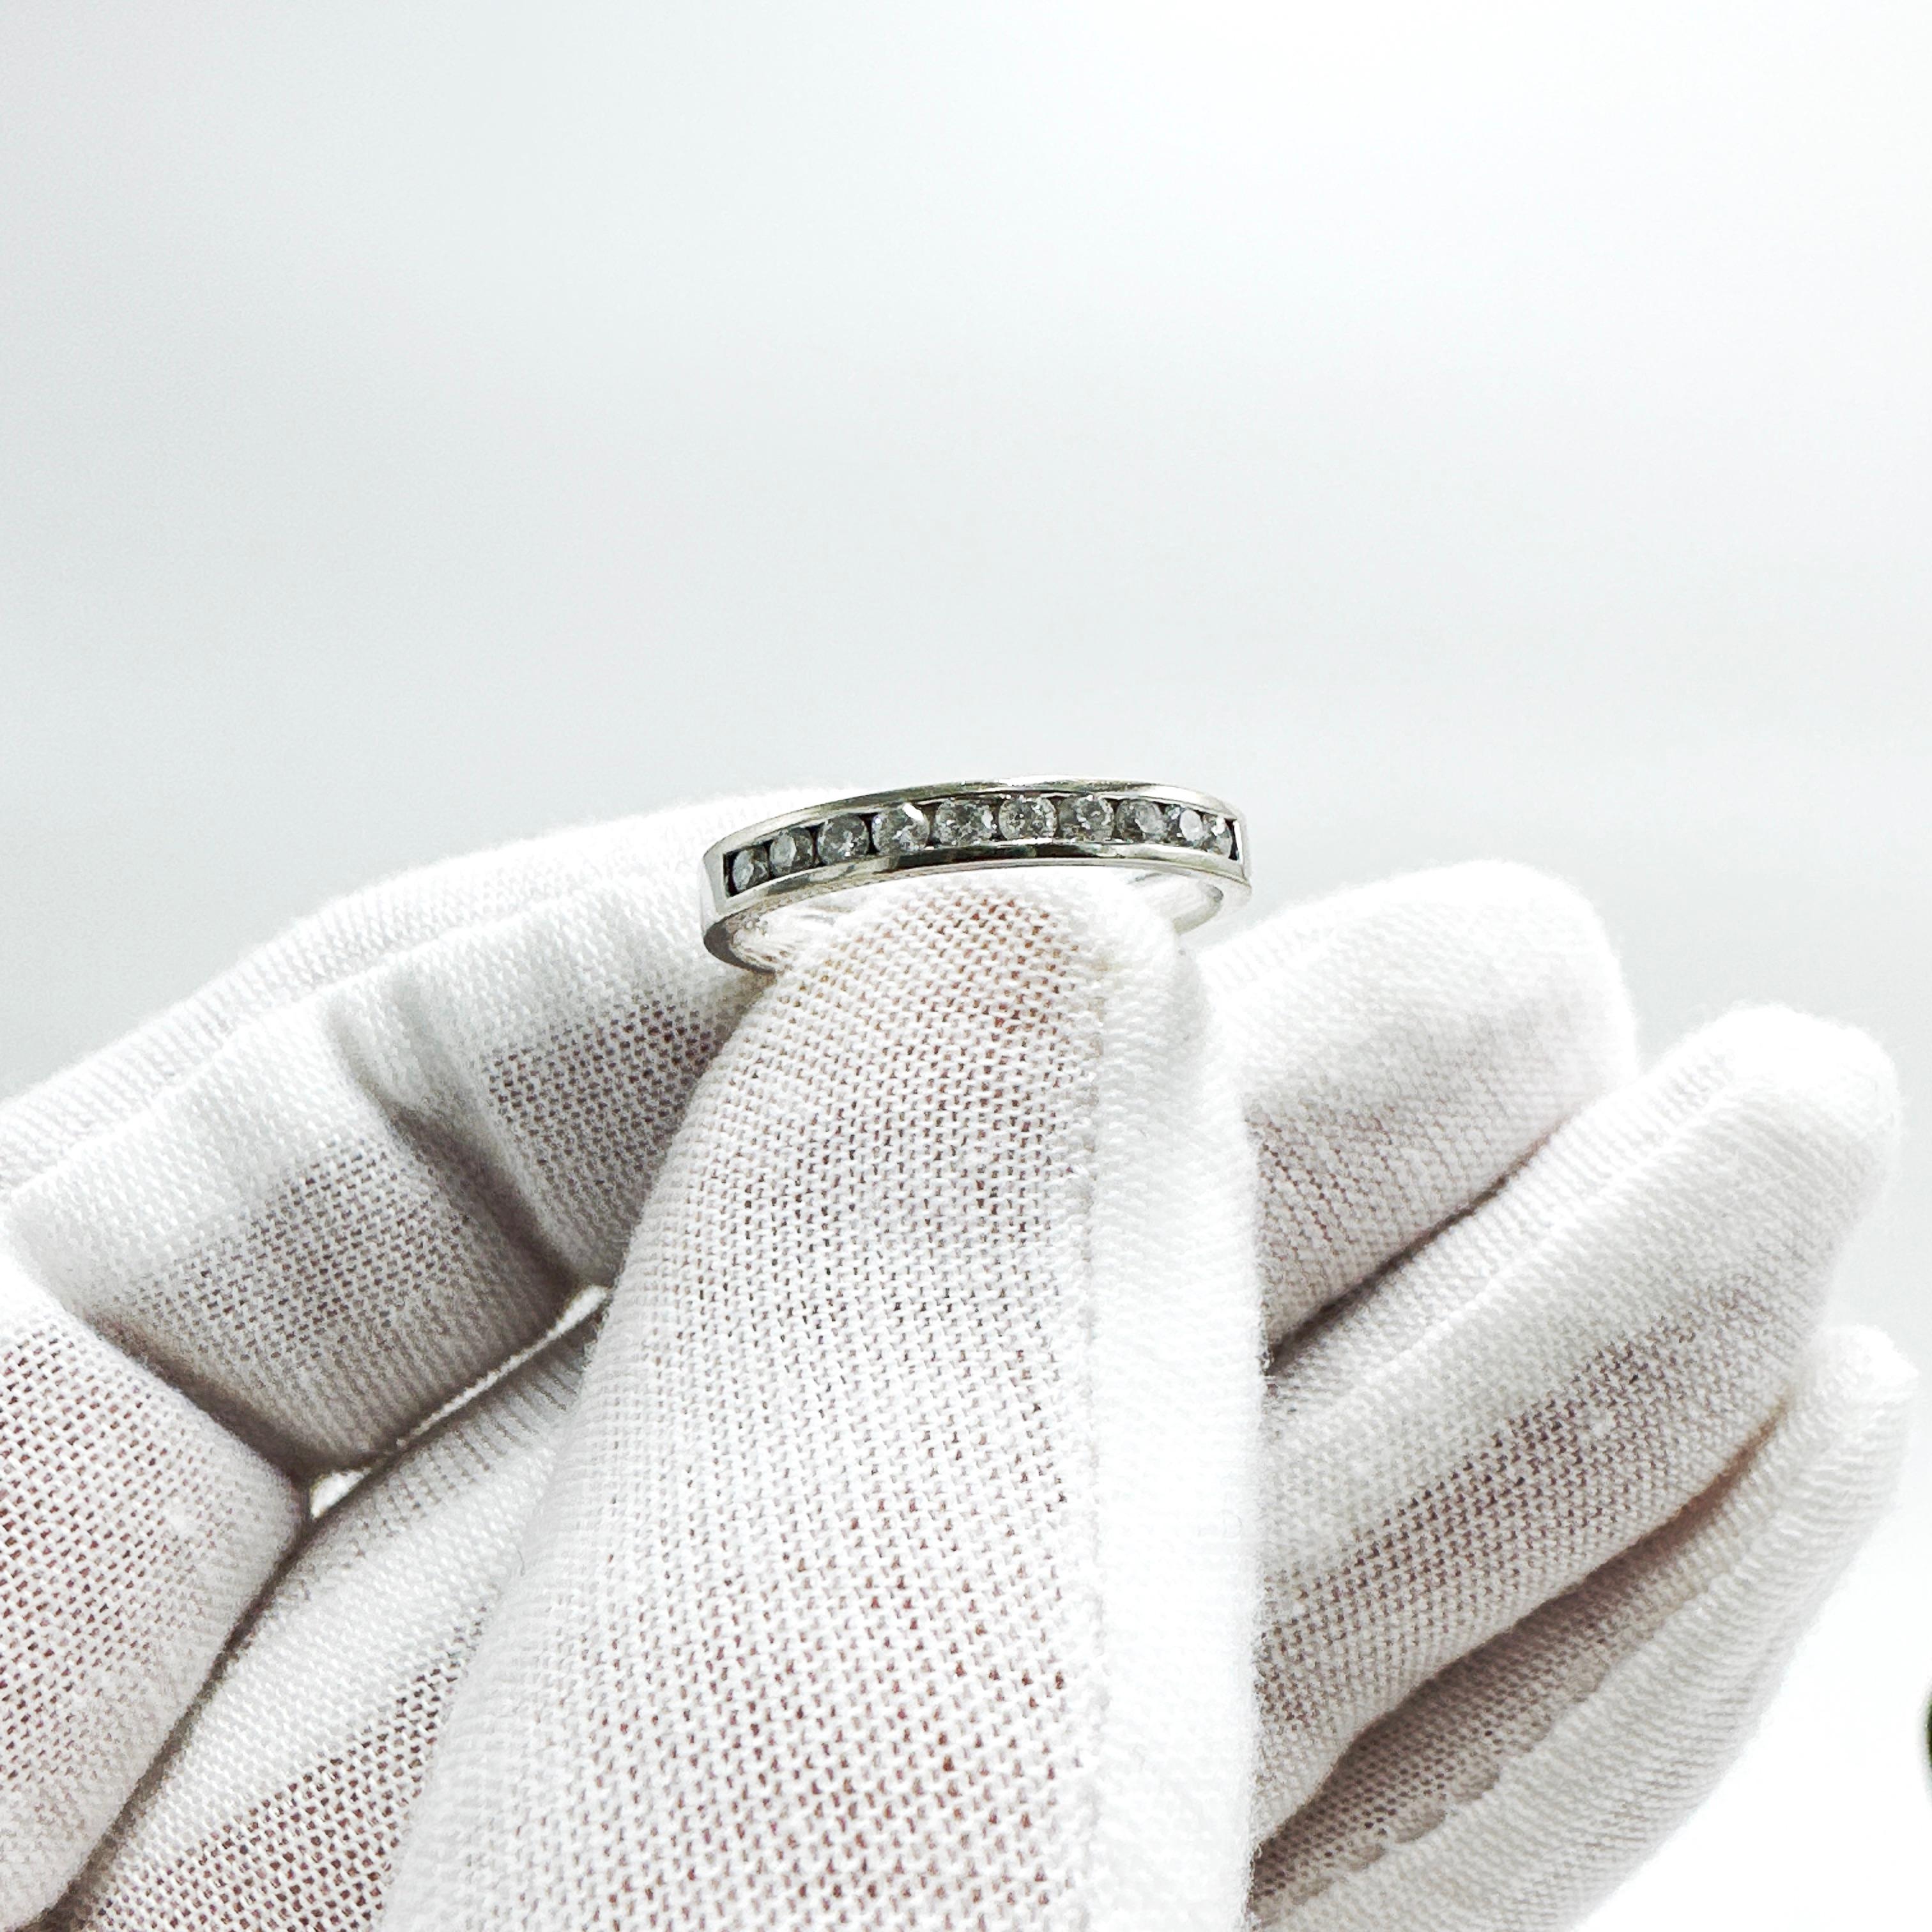 Hier ist eine schöne 14k Weißgold Natural Diamond 1/2 Eternity Ring.

Dieser Ring enthält 10 natürliche runde Brillanten von je 0,03ct mit einem Durchmesser von ca. 1,90mm. Die Diamanten haben eine Reinheit von I-1 und eine Farbe von H-I mit guter